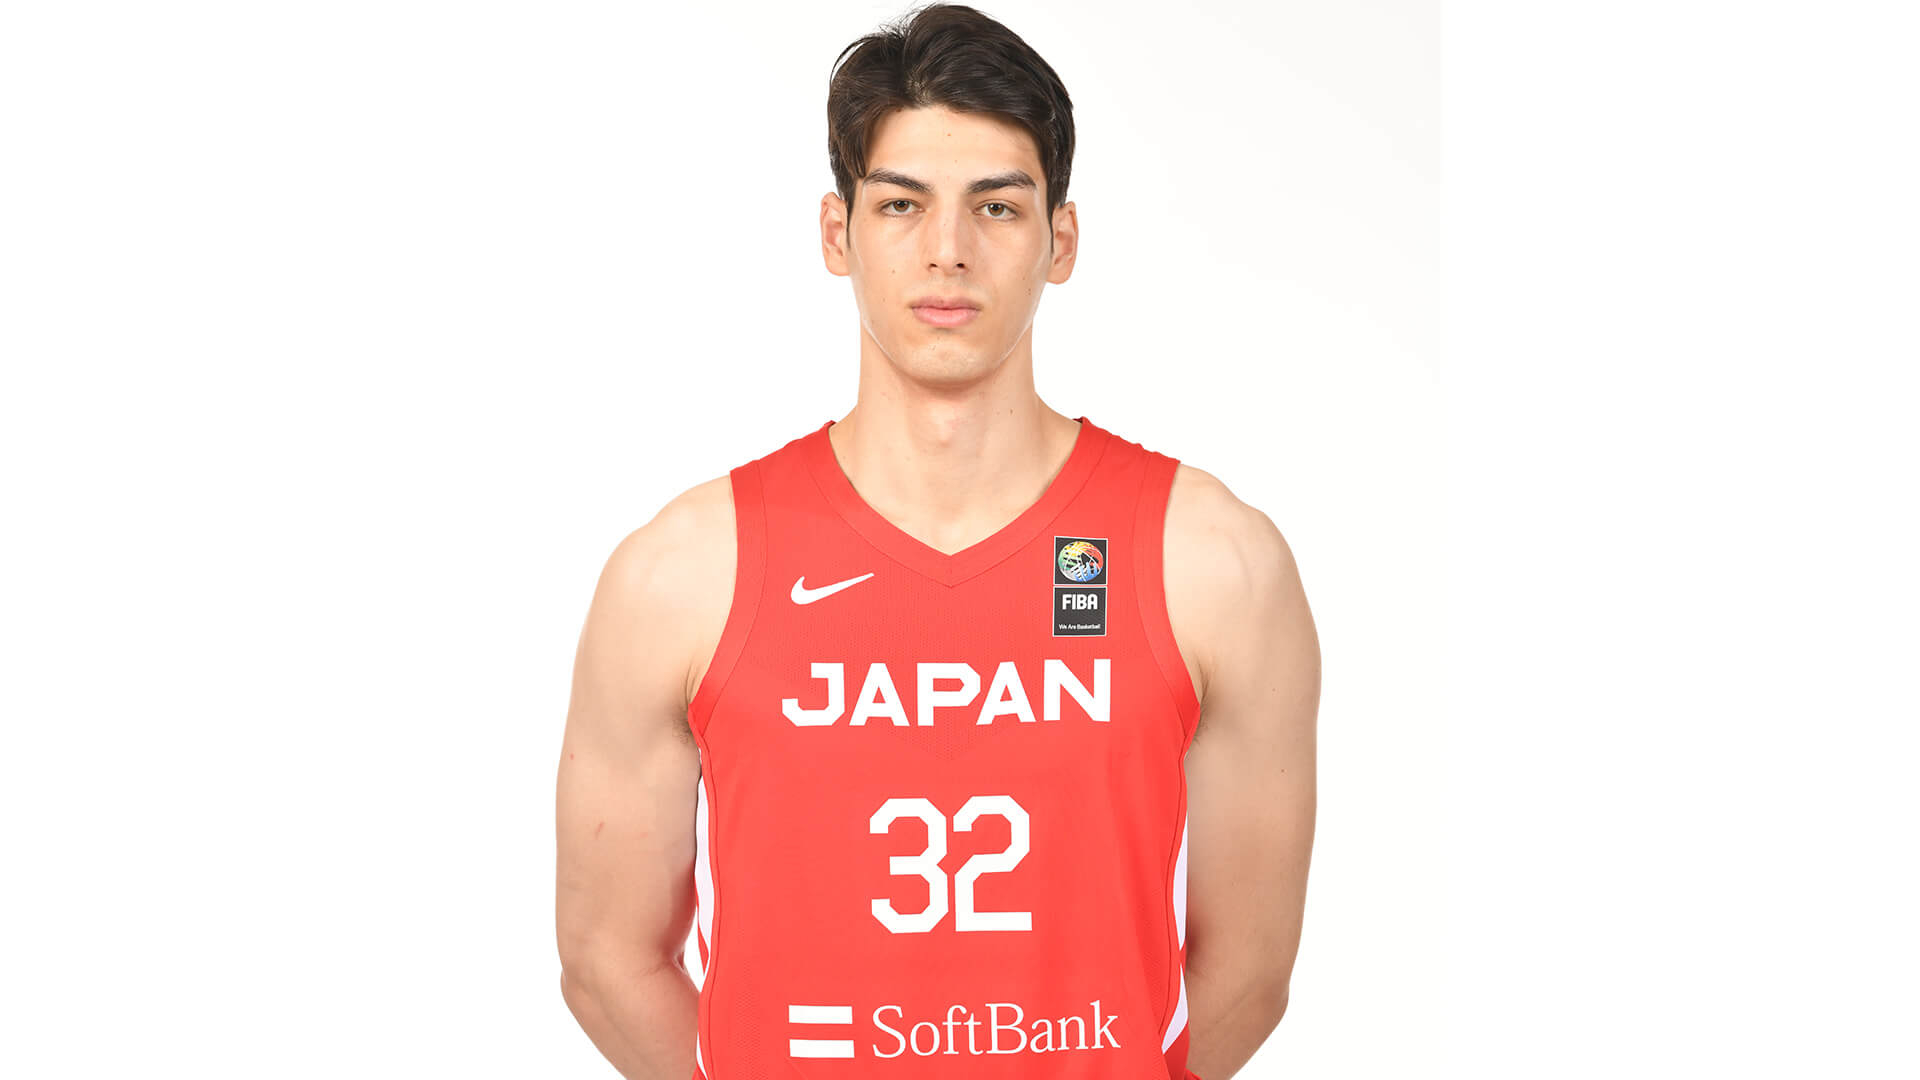 日本生命カップ21 バスケットボール男子日本代表国際強化試合 21 沖縄大会 日本代表選手選出のお知らせ シーホース三河